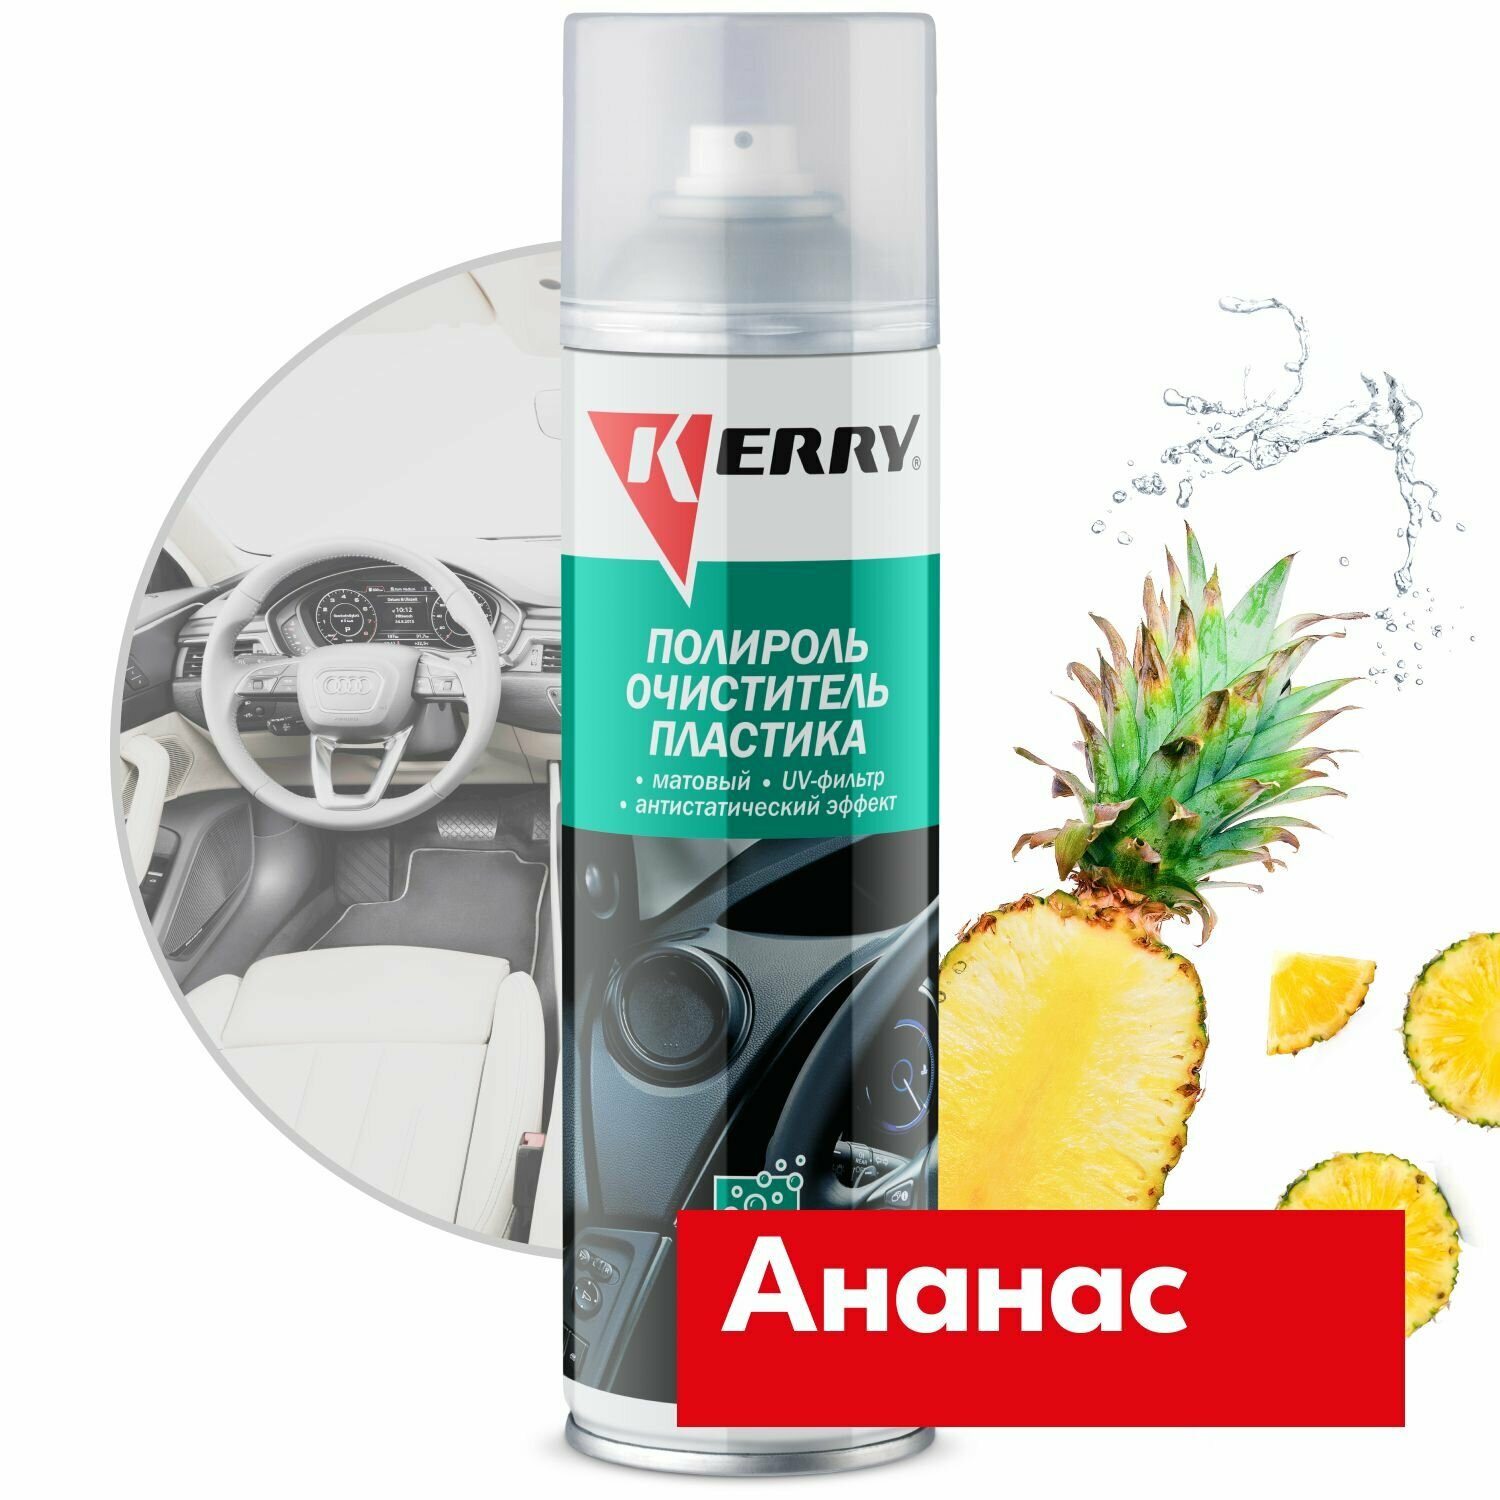 Пенный полироль KERRY - очиститель пластика салона с матовым эффектом, запах ананас, 335 мл